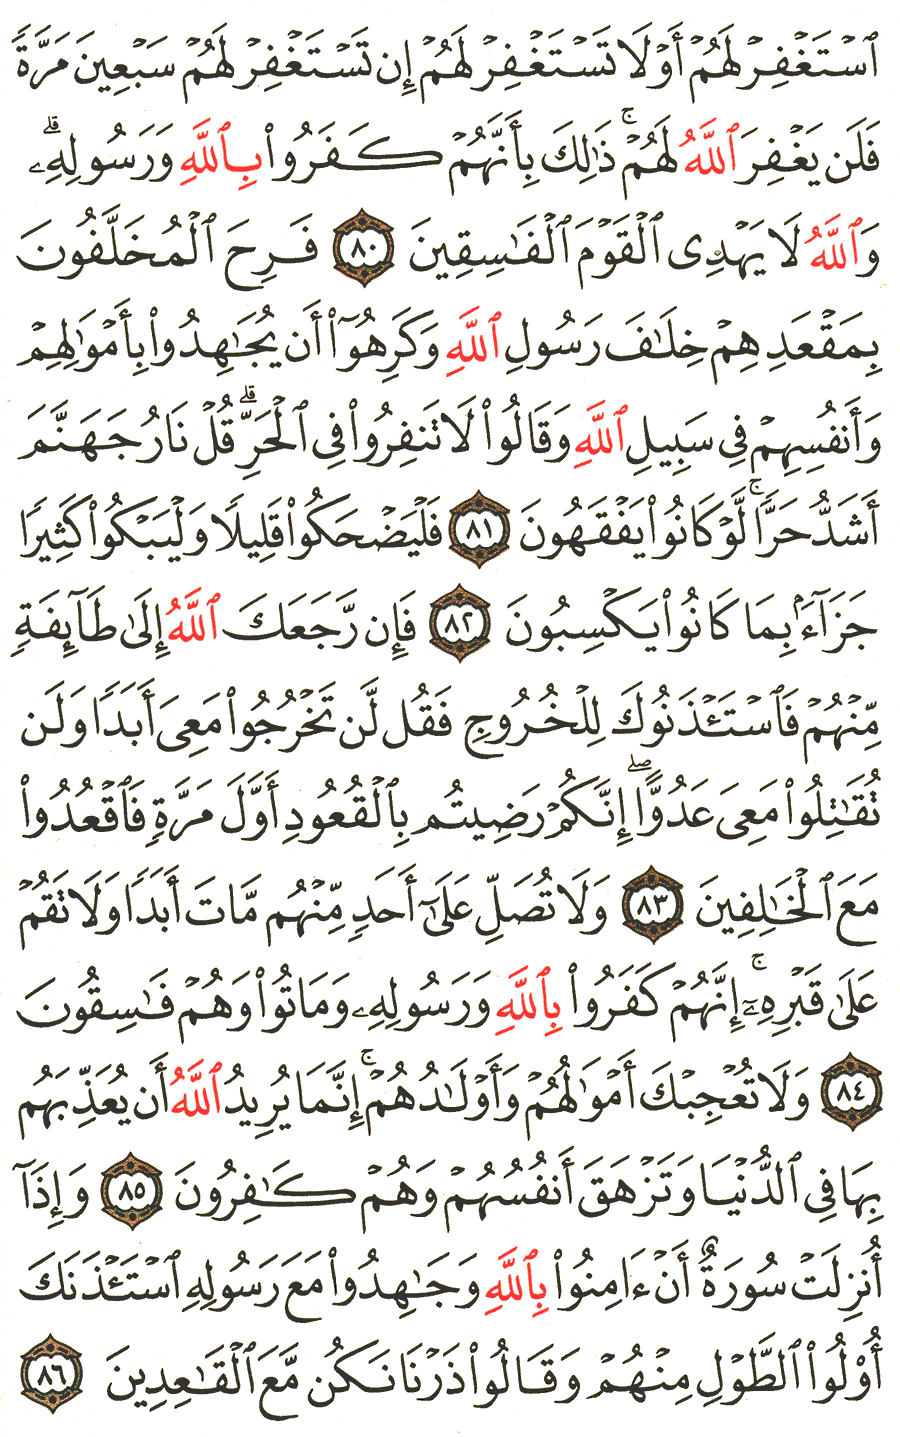 الصفحة 200 من القرآن الكريم